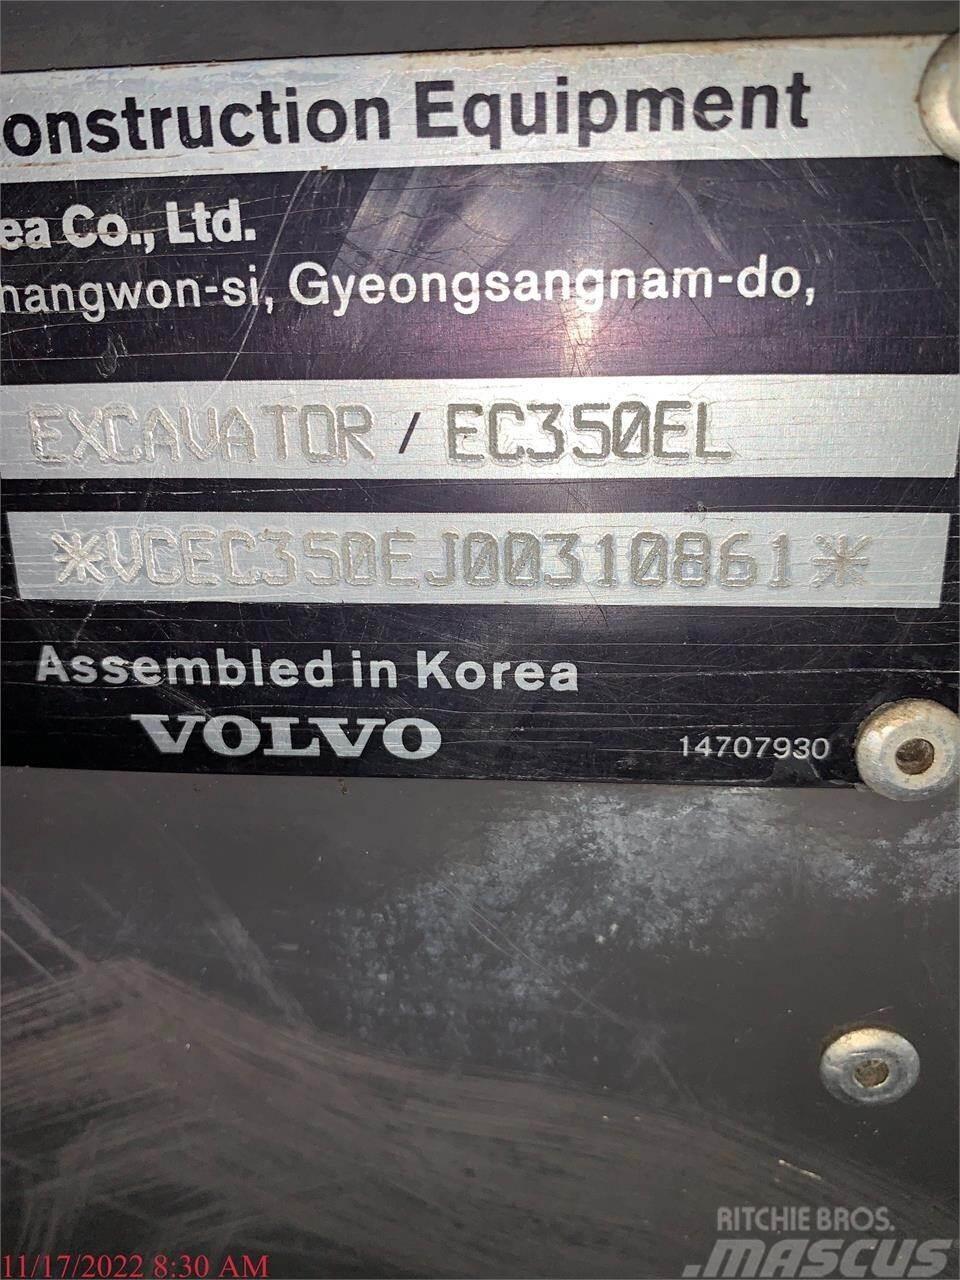 Volvo EC350EL Raupenbagger